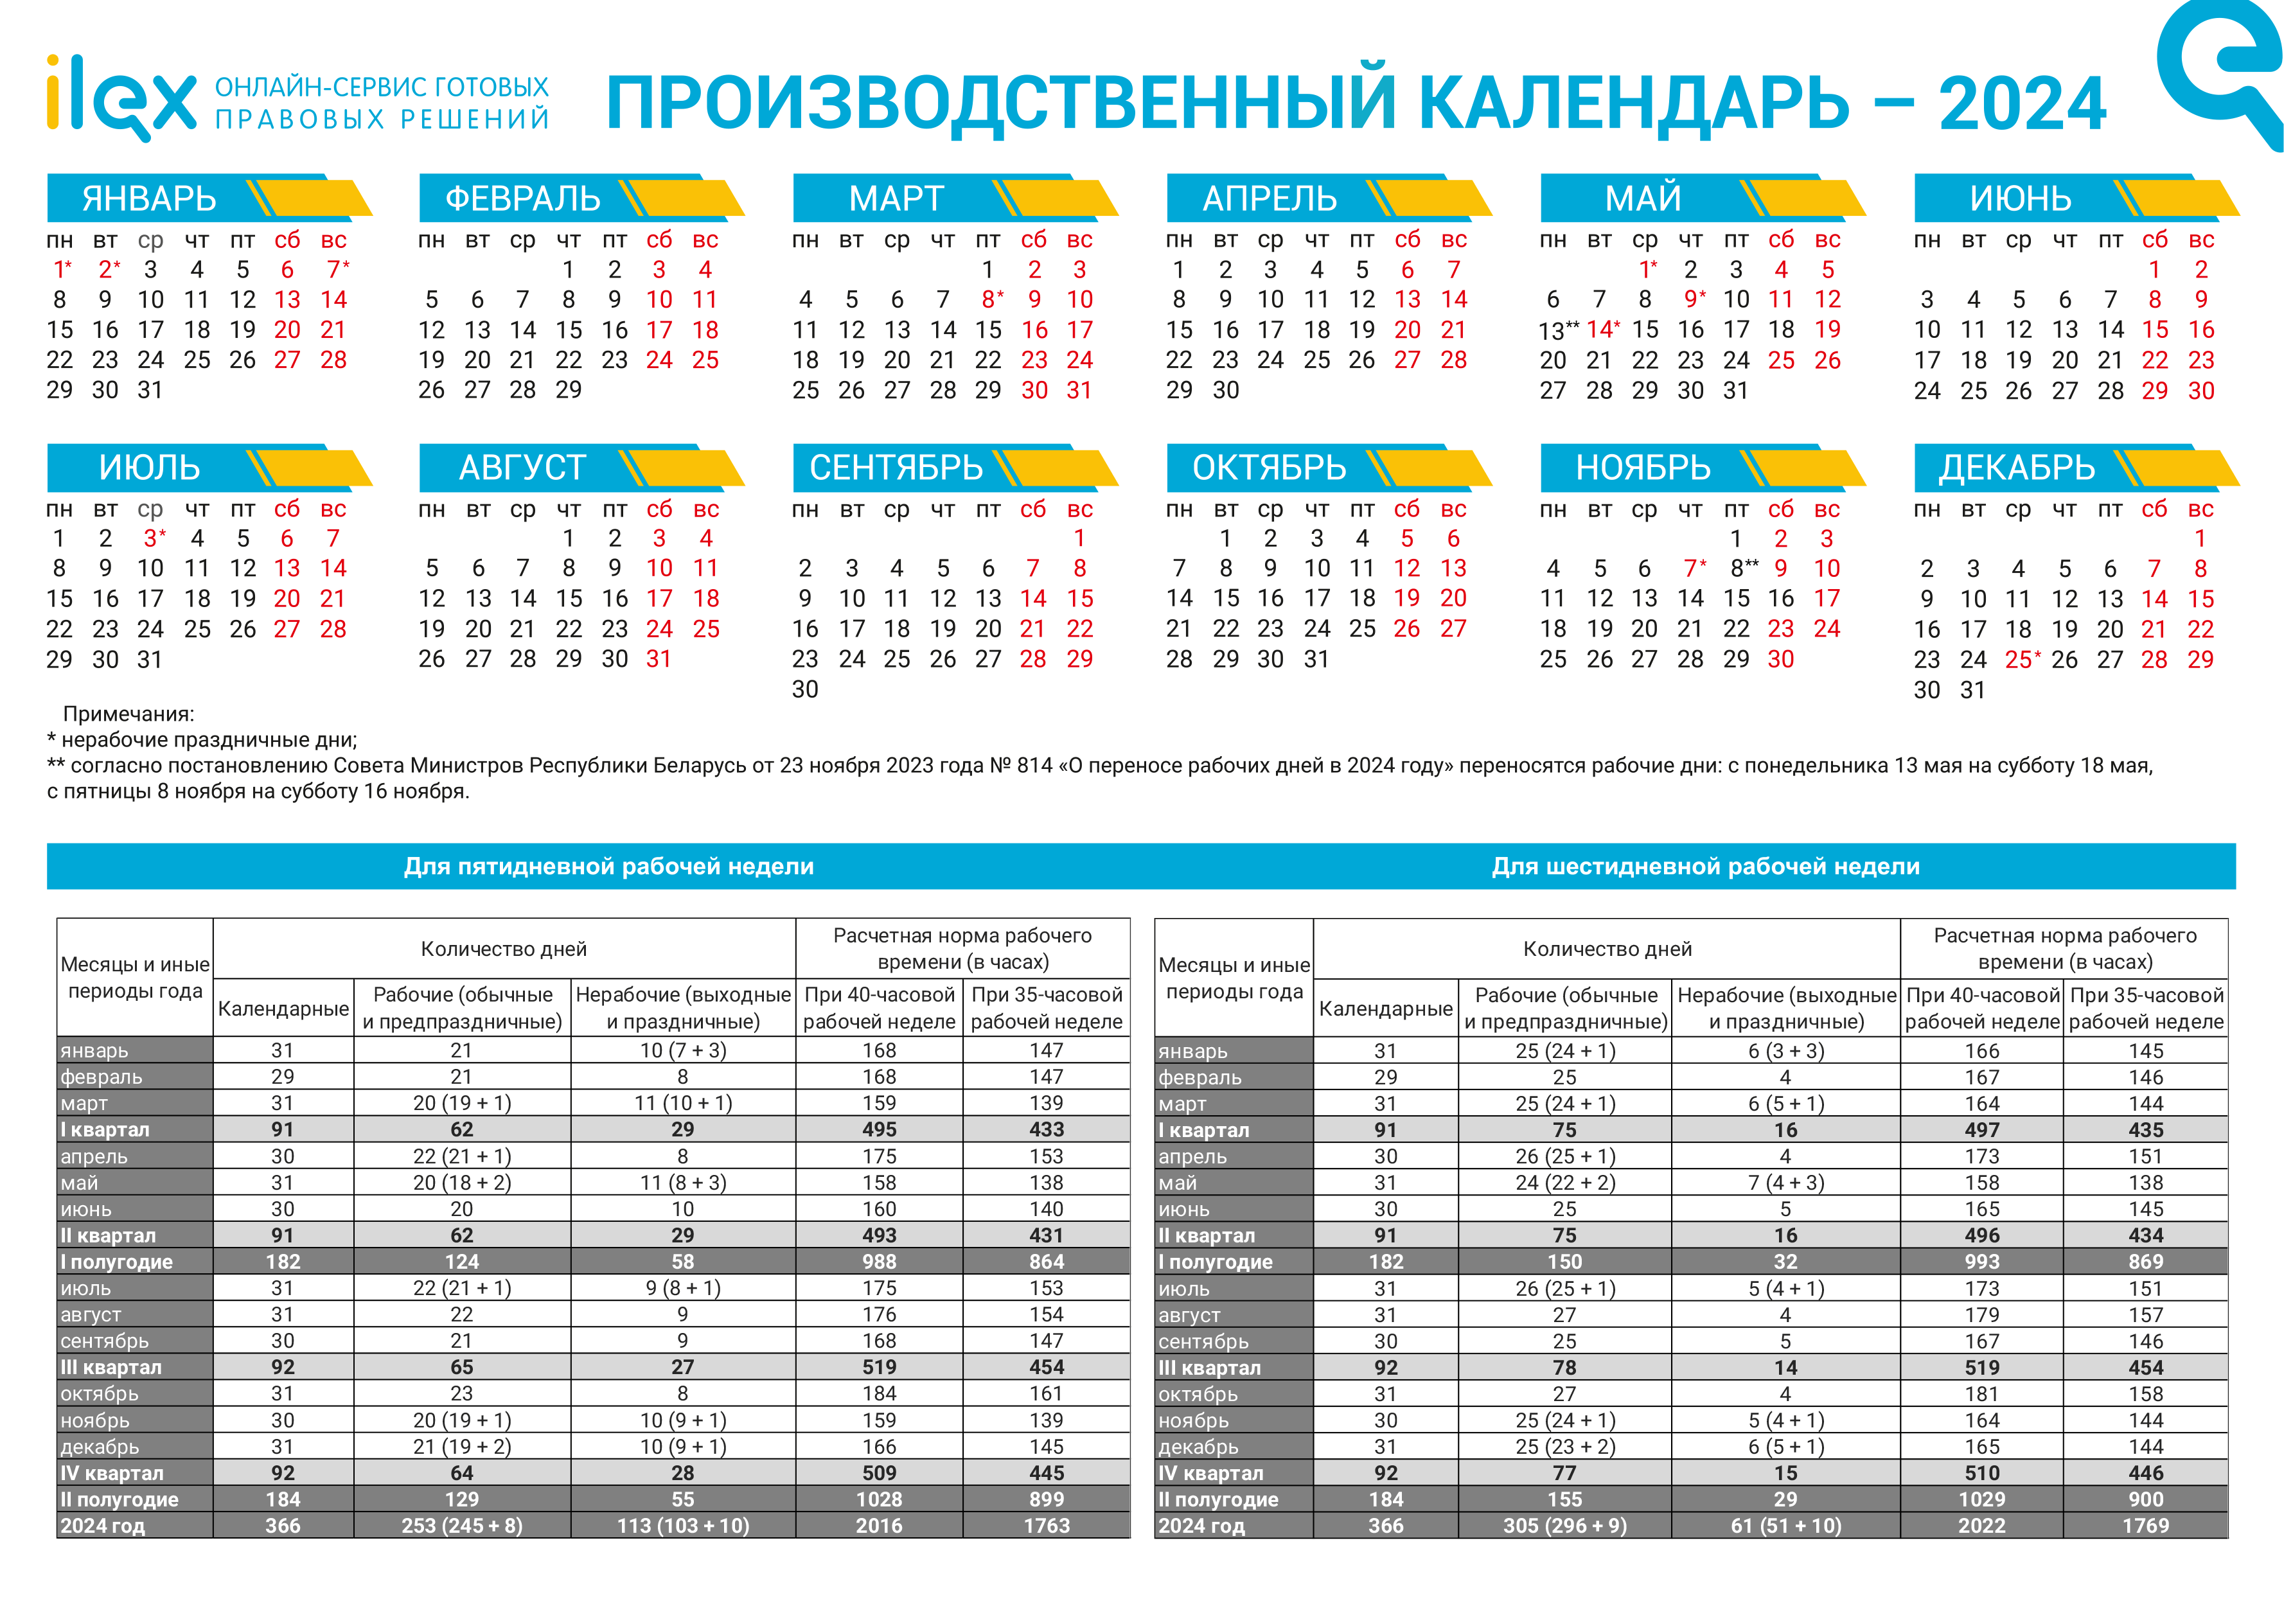 Беларусь - Производственный календарь на 2024